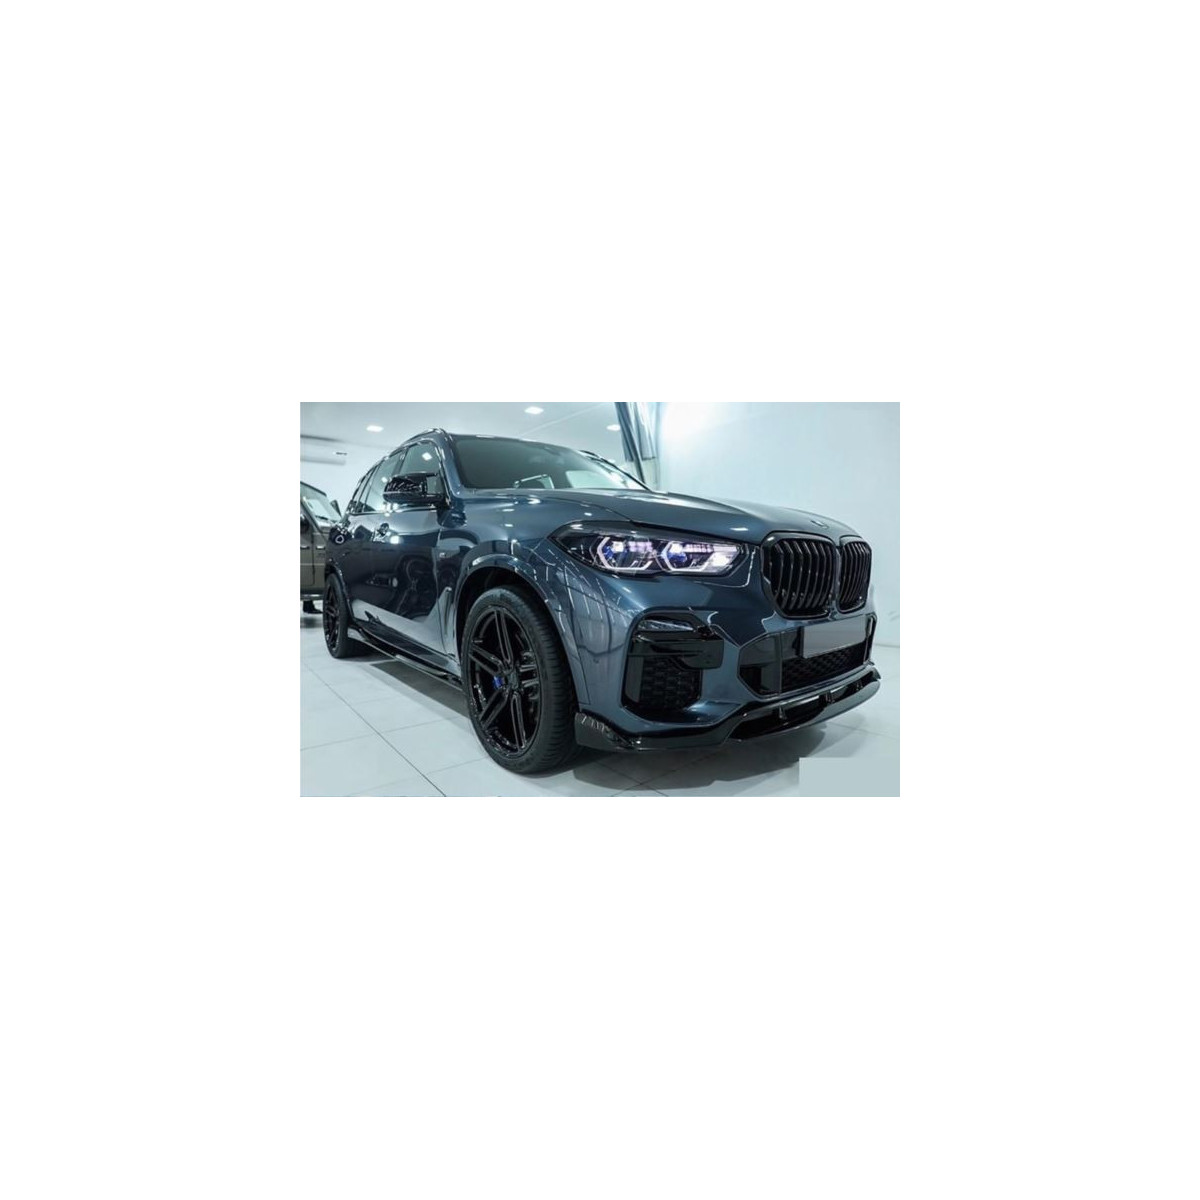 AERO BODY KIT BMW X5 G05 18- M-TECH GLOSSY BLACK